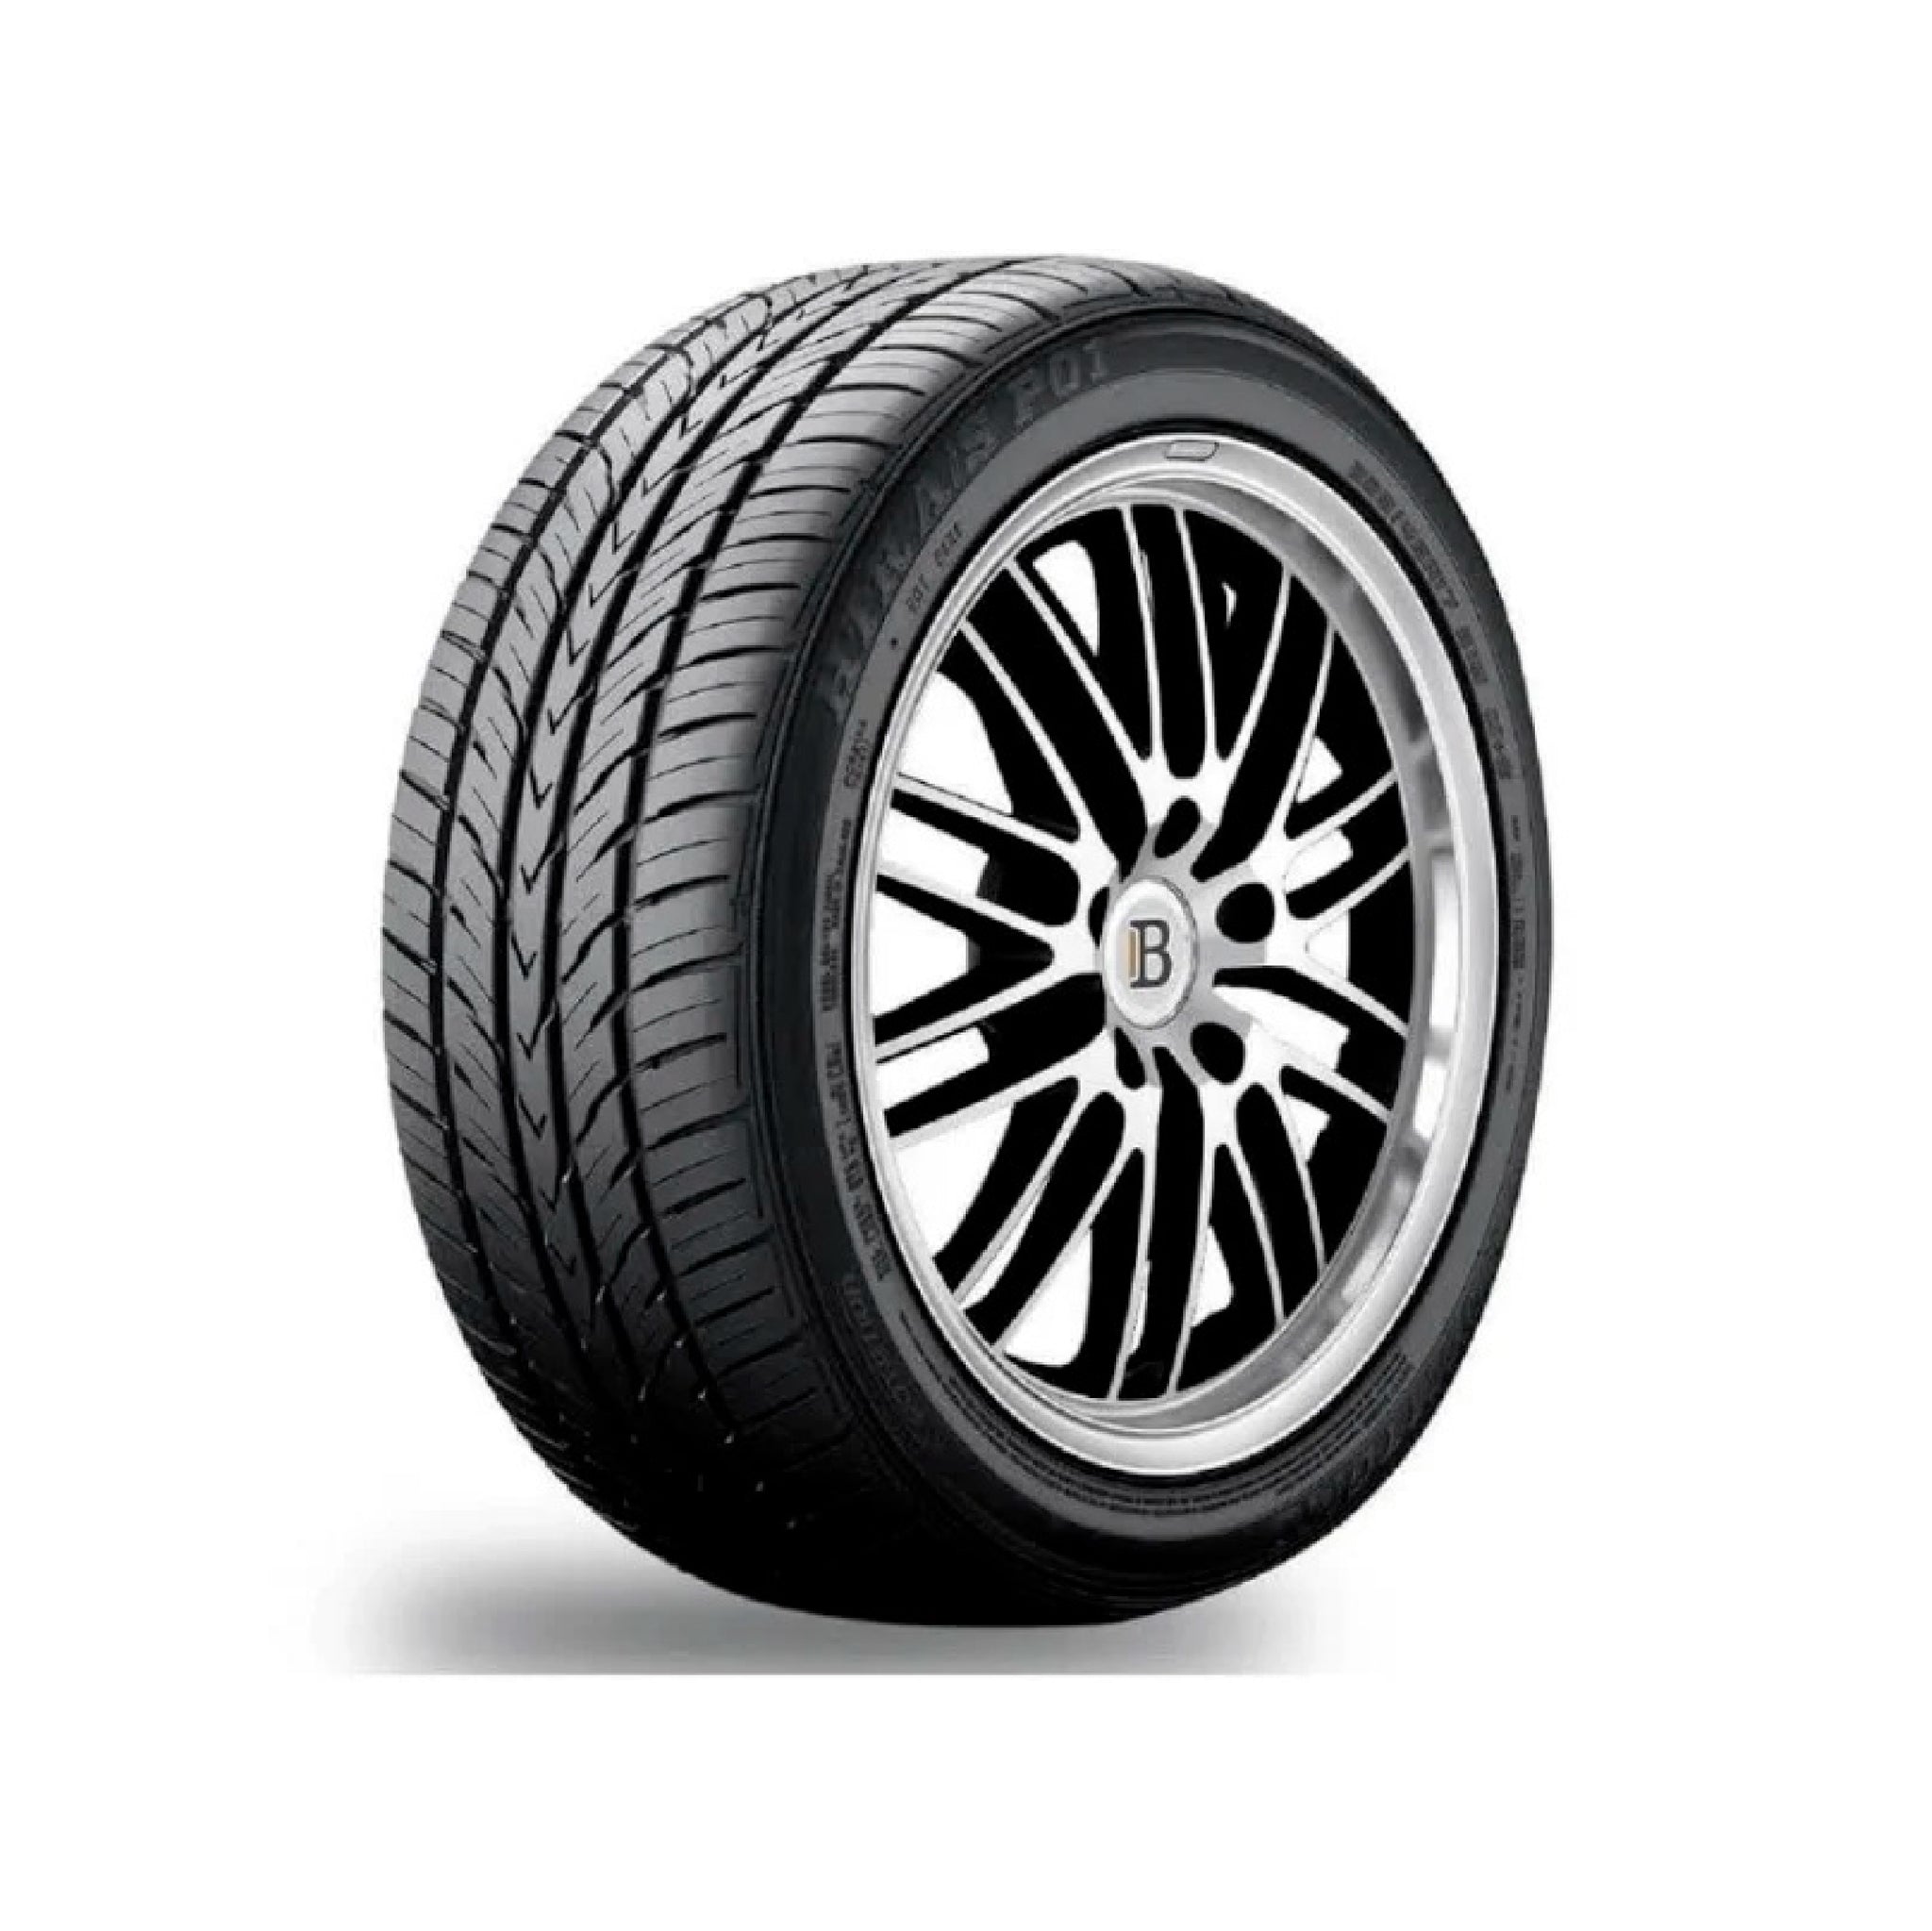 Marcas y modelos de la medida de neumáticos 205 55 r16